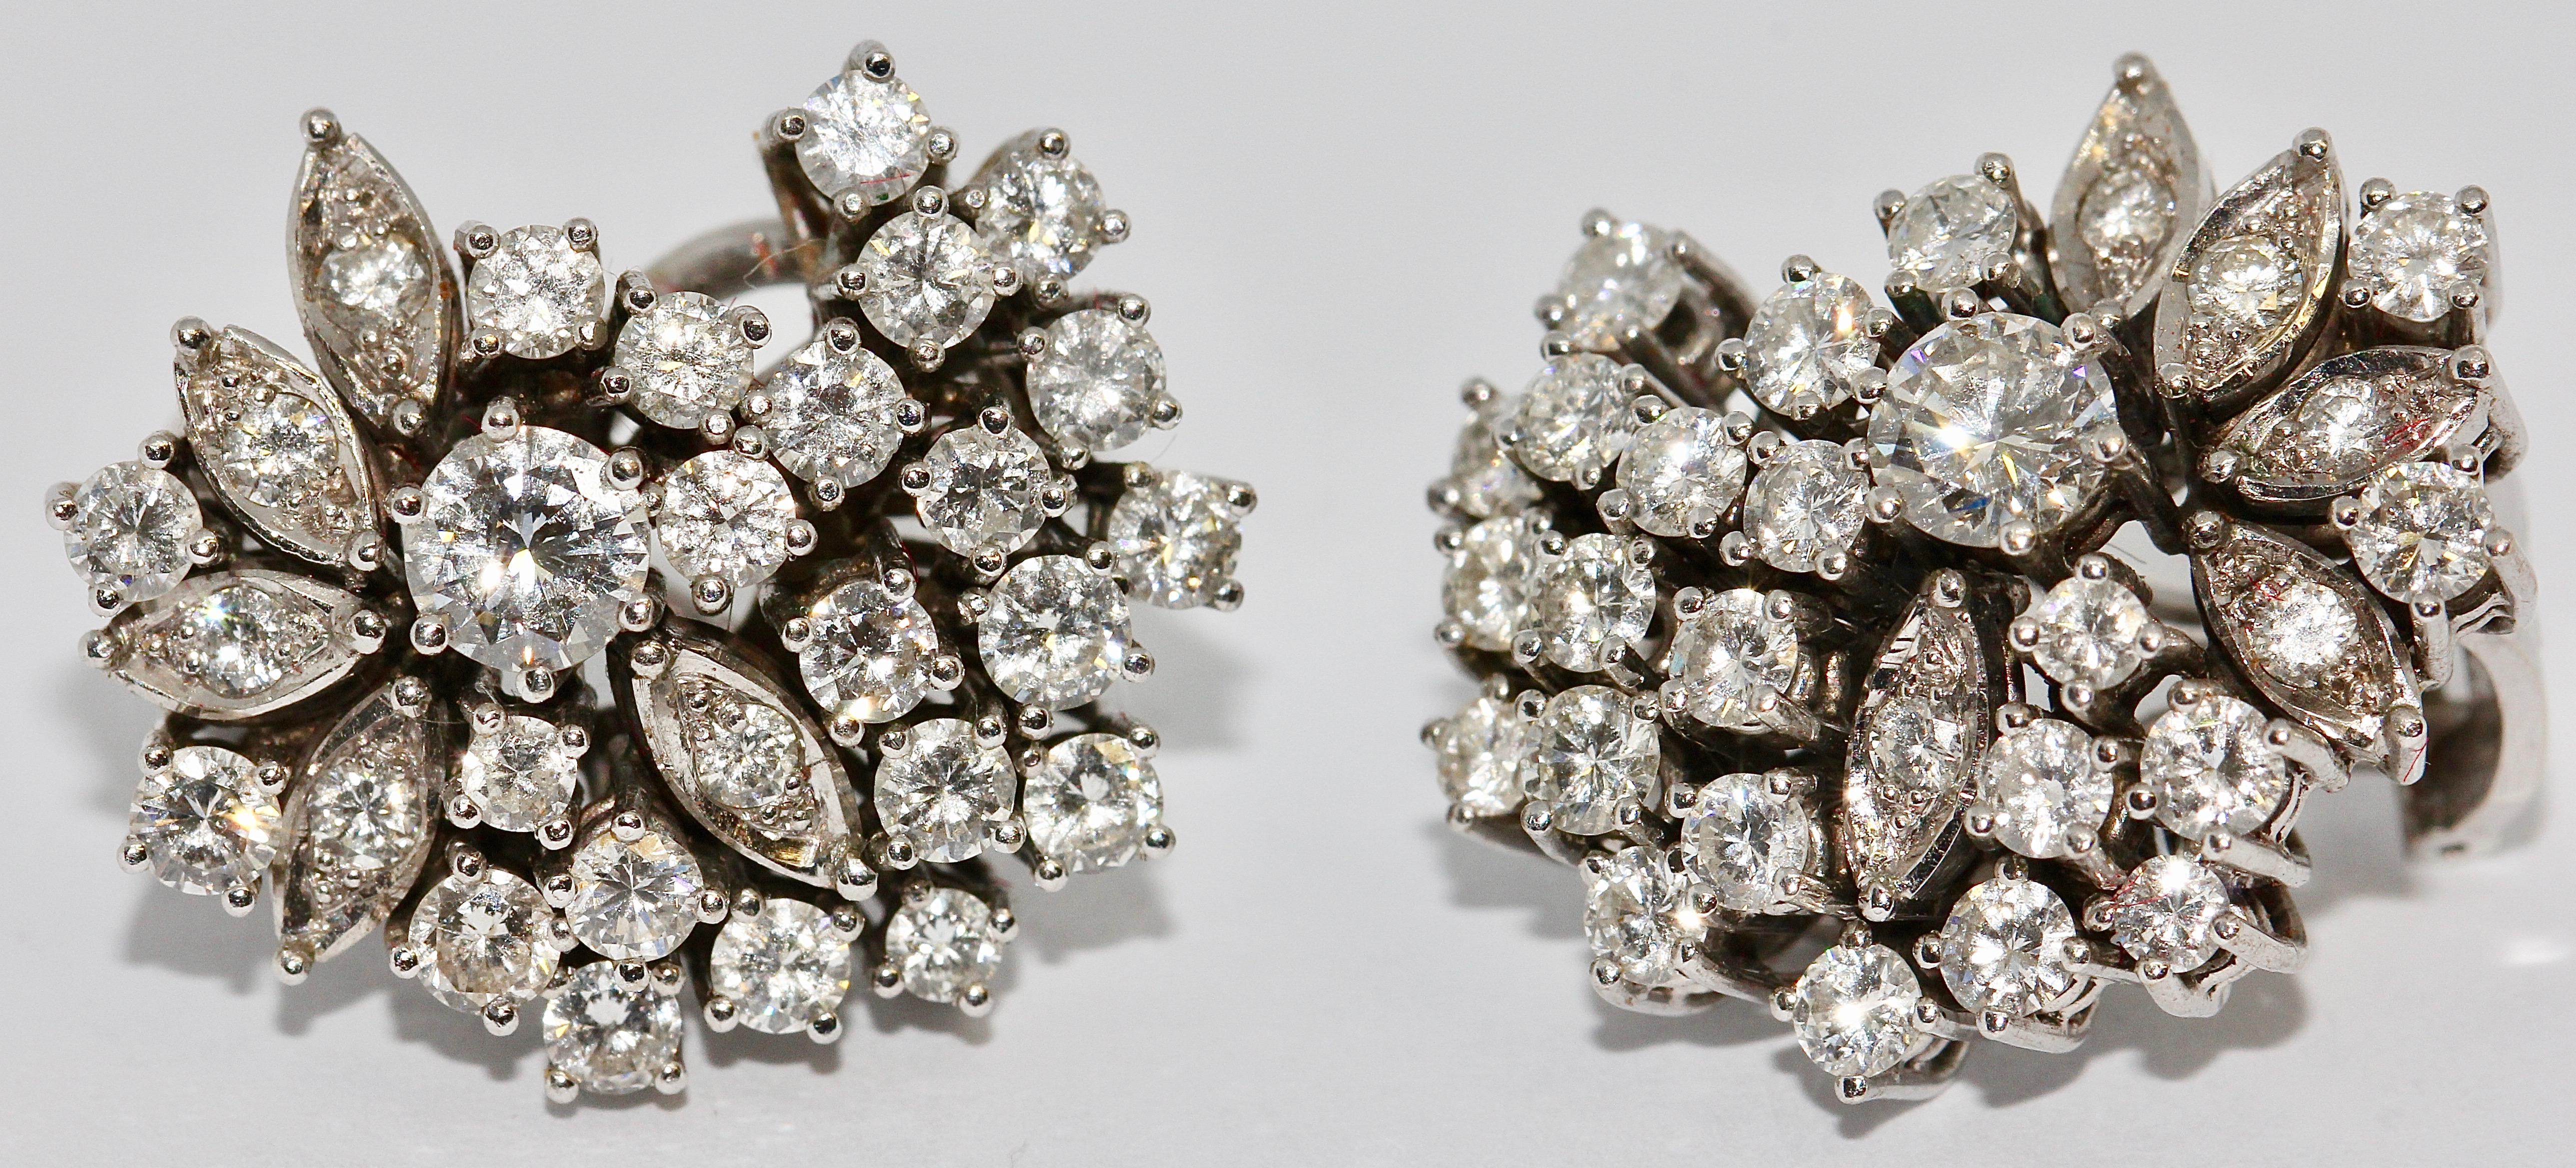 Prächtige Diamant-Ohrringe, Clips, 14 Karat Weißgold, insgesamt fast 4 Karat.

Jeder Ohrring ist mit 28 Diamanten besetzt. Der große Solitär wiegt etwa 0,33 ct. pro Stück.

Die kleinen Diamanten haben eine Größe von jeweils ca. 0,06 Karat.

Die